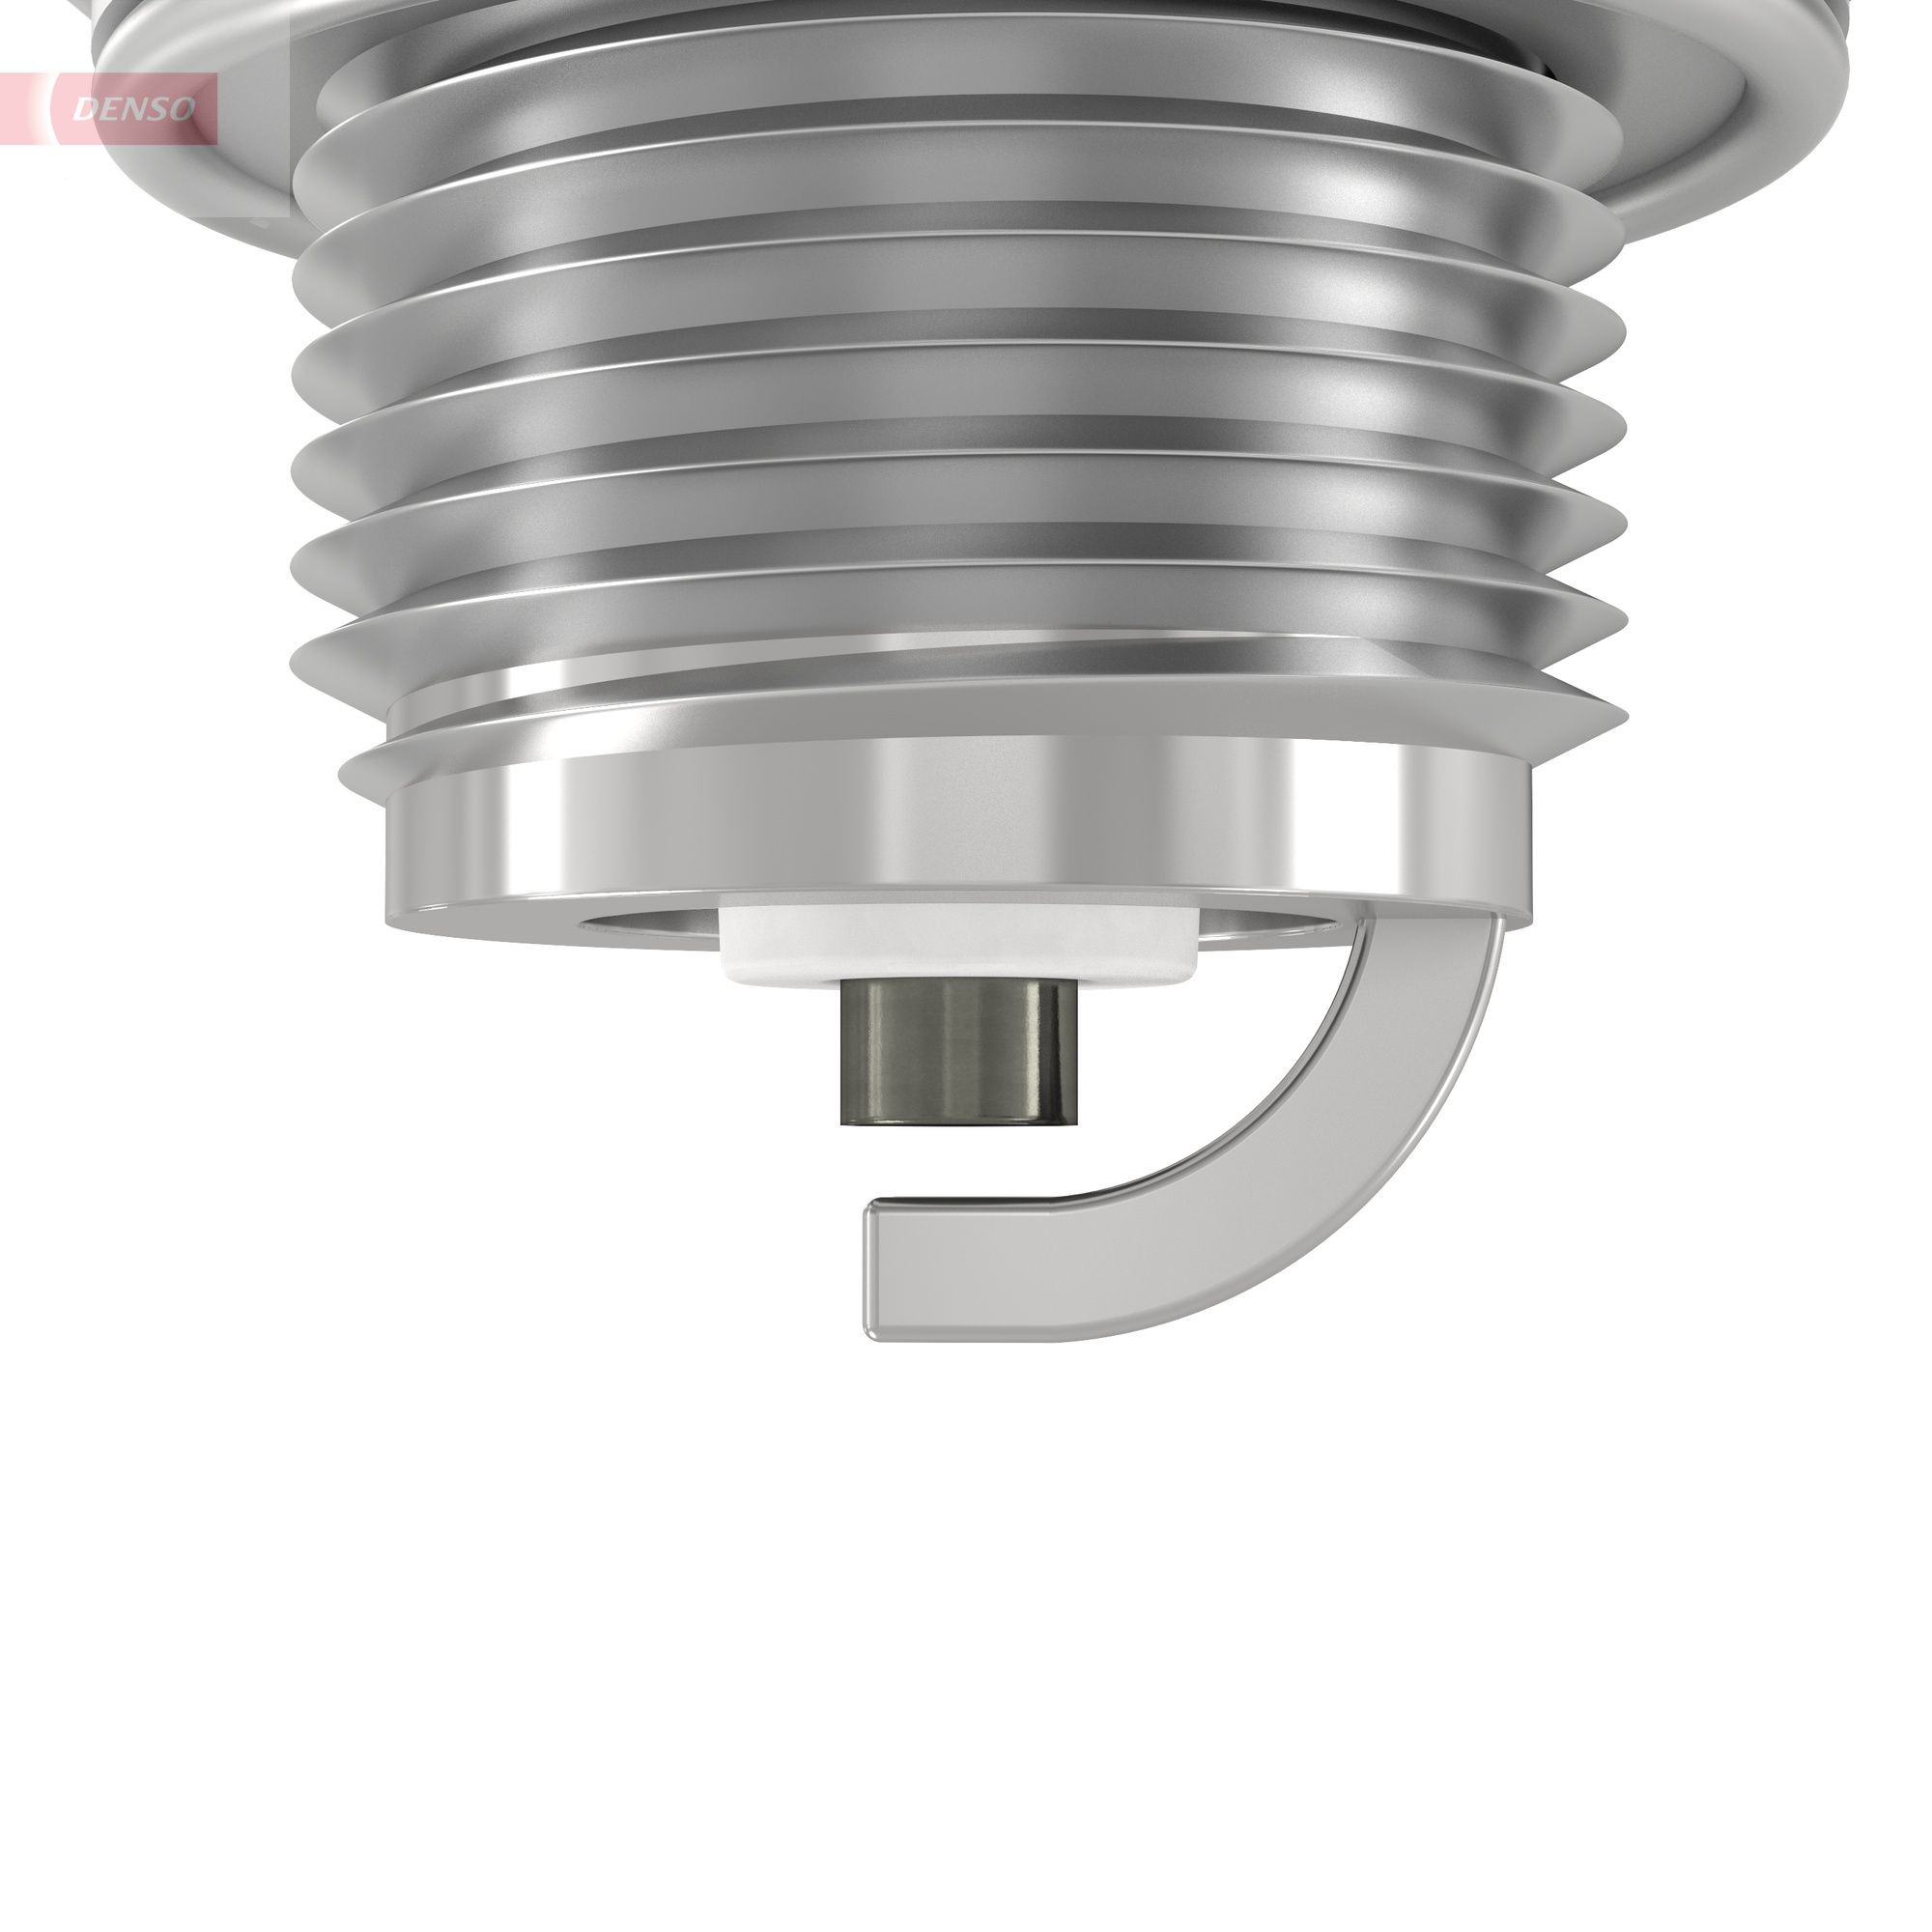 DENSO Nickel W20MPR-U10 Spark plug Spanner Size: 19